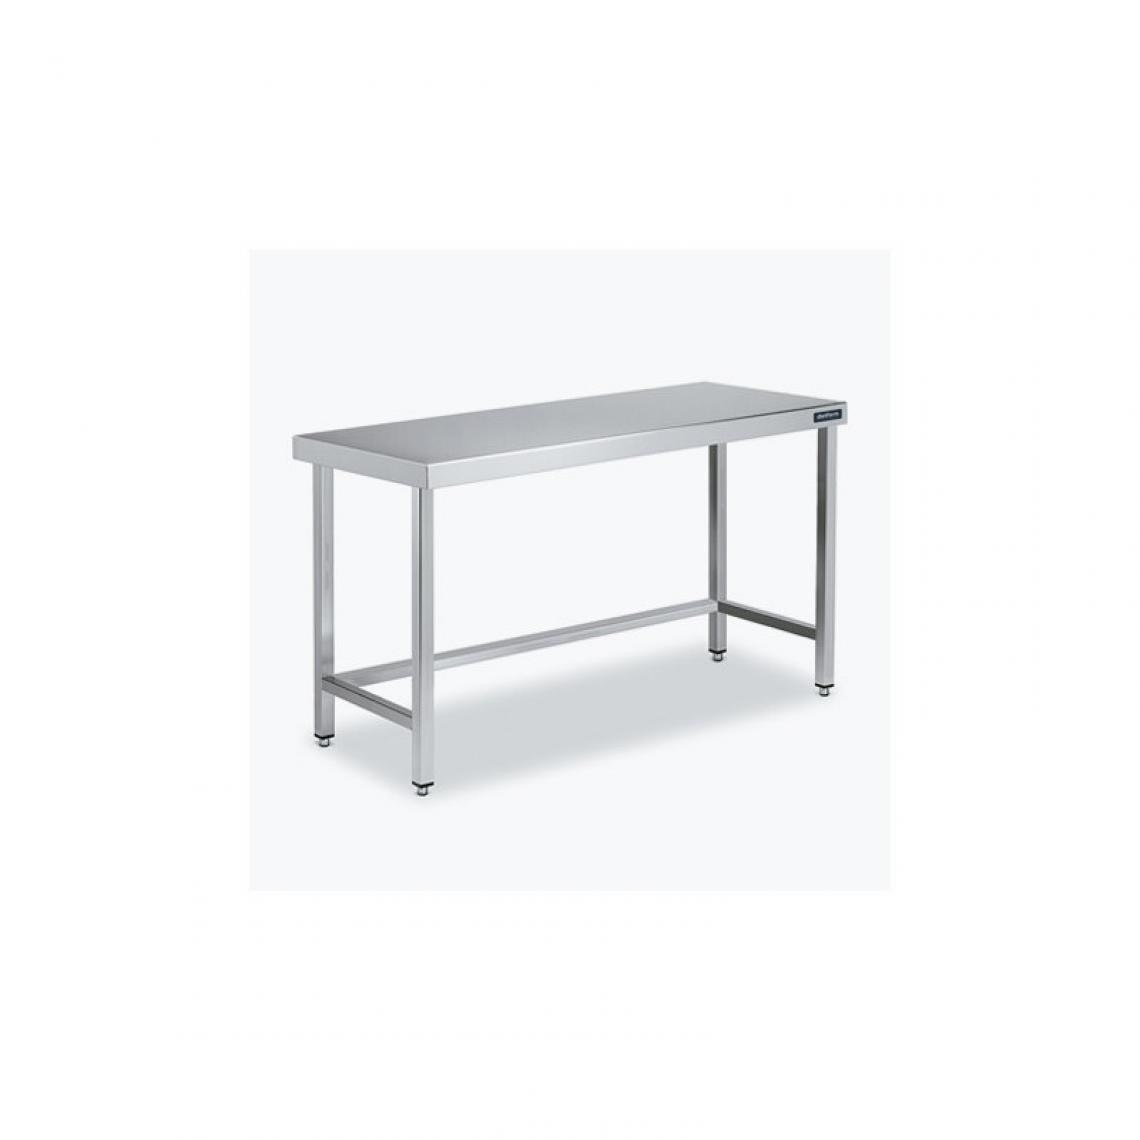 DISTFORM - Table Centrale 600x600 avec Renforts - Distform - Inox 18/101400x600x850mm - Tables à manger